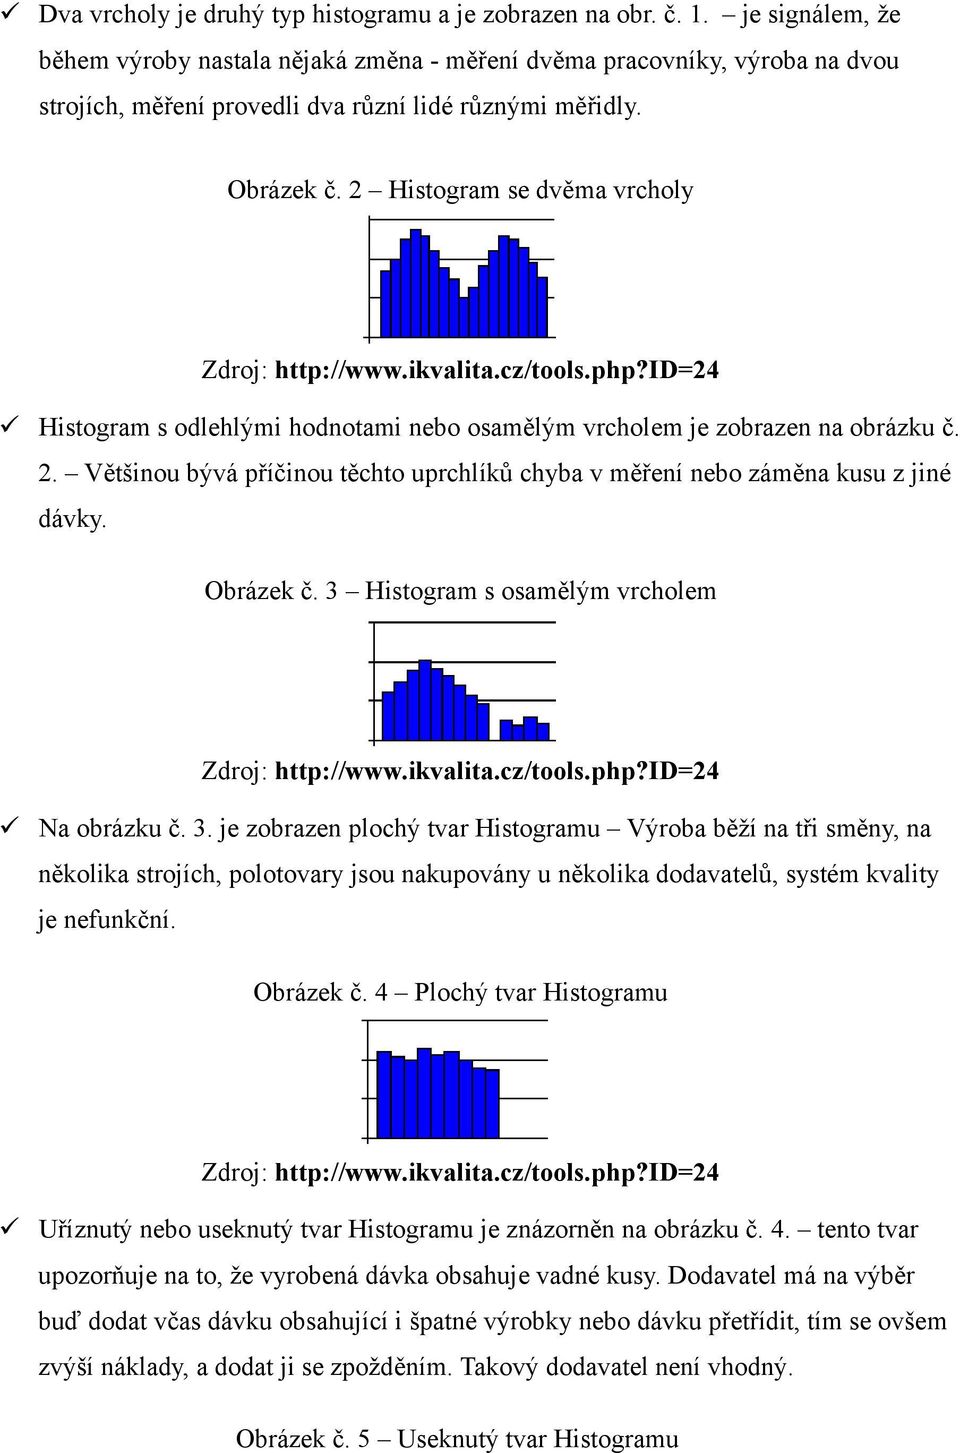 2 Histogram se dvěma vrcholy Zdroj: http://www.ikvalita.cz/tools.php?id=24 Histogram s odlehlými hodnotami nebo osamělým vrcholem je zobrazen na obrázku č. 2.